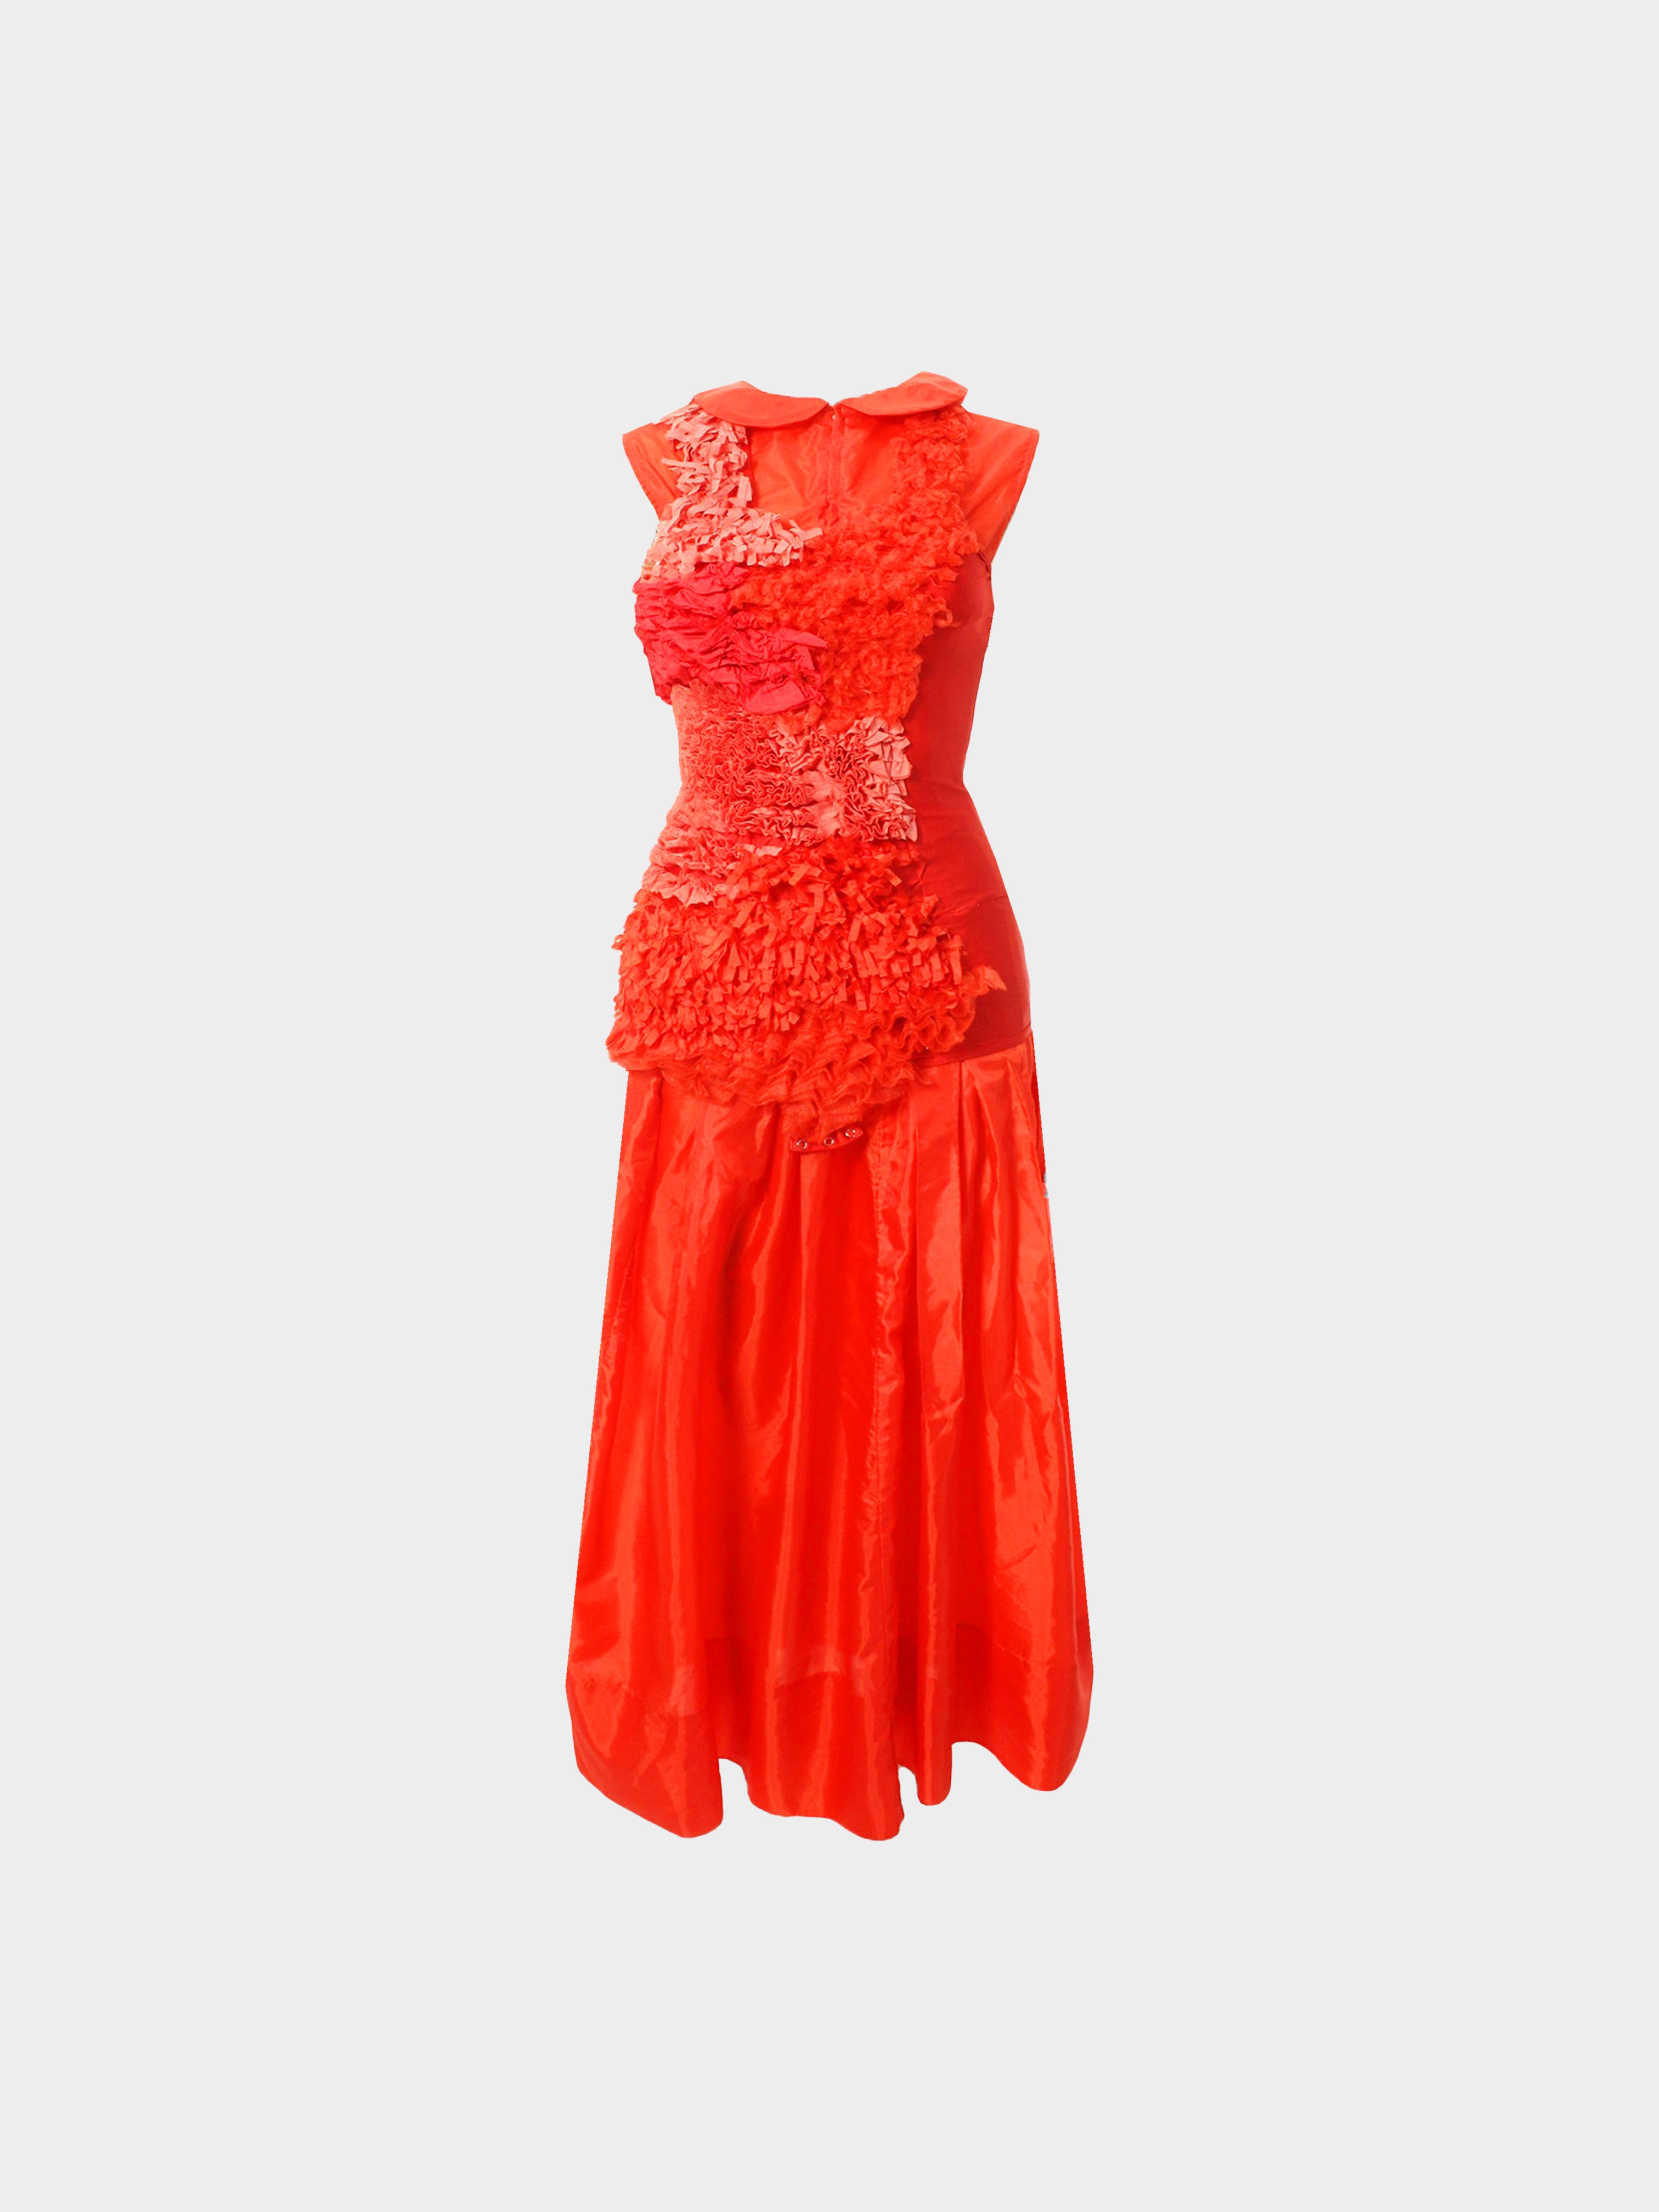 Comme des Garçons SS 2000 Red Ruffled Dress